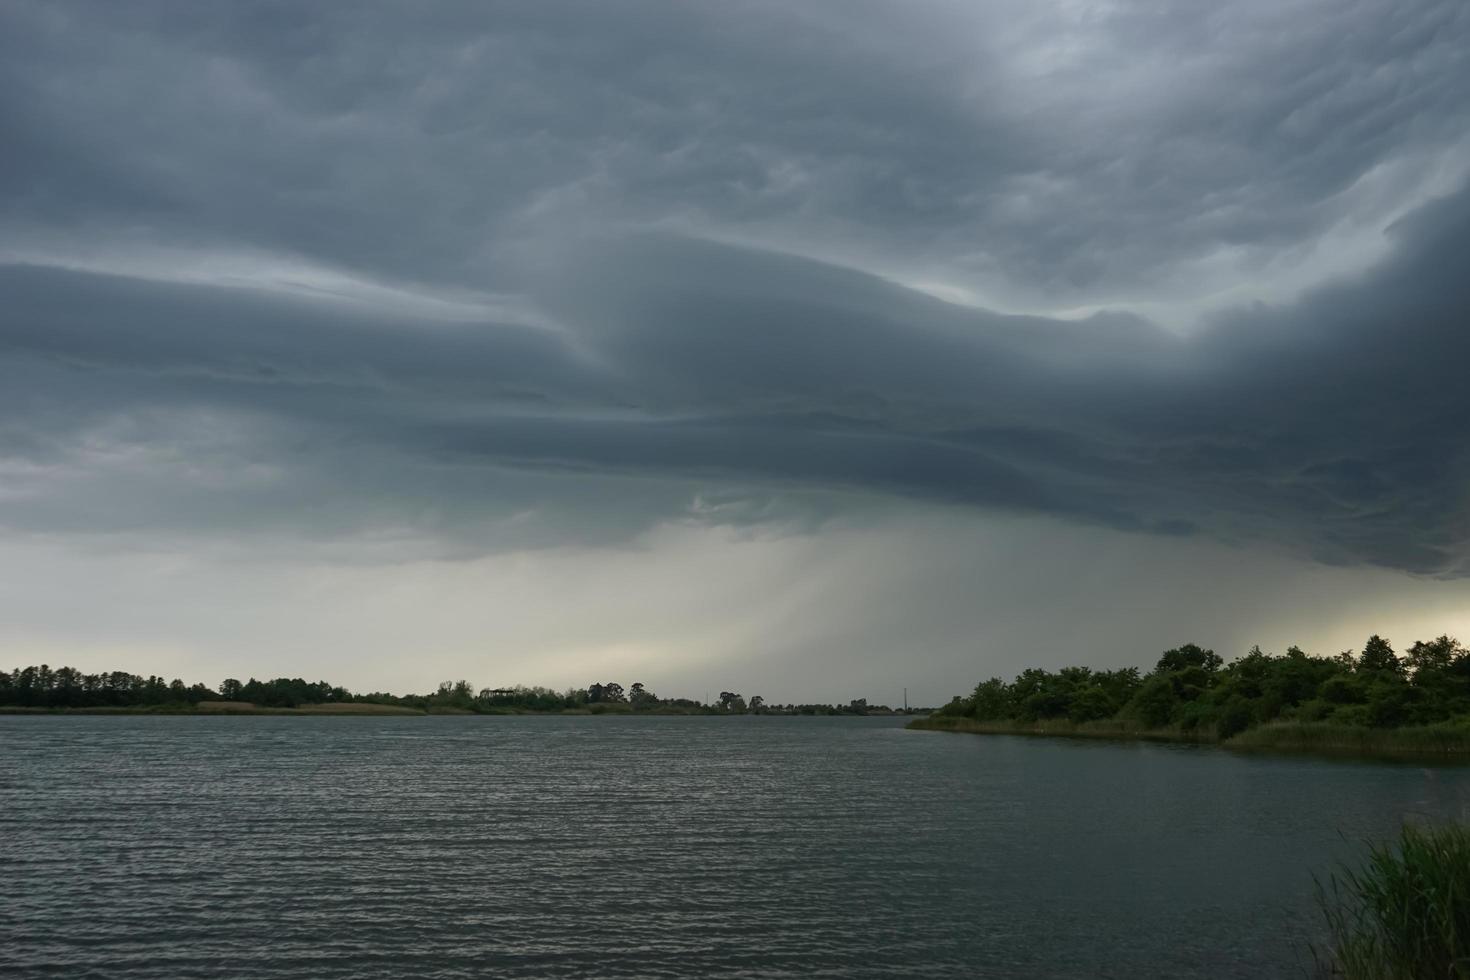 espectacular paisaje con nubes de tormenta sobre el lago foto